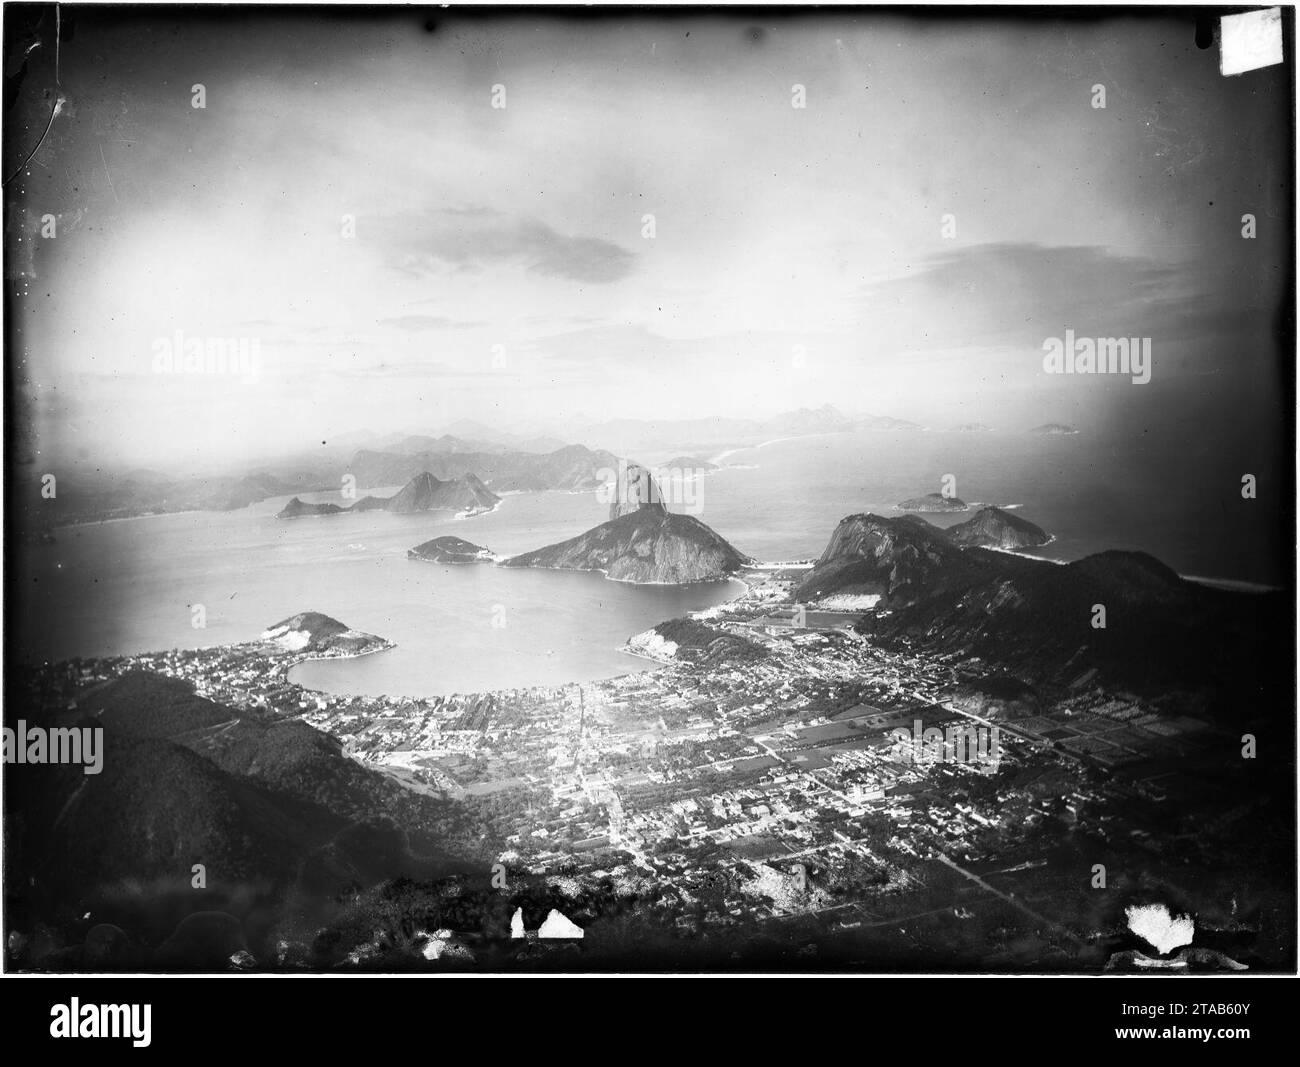 Vista panorama da enseada de Botafogo a partir do topo do Corcovado. Stock Photo